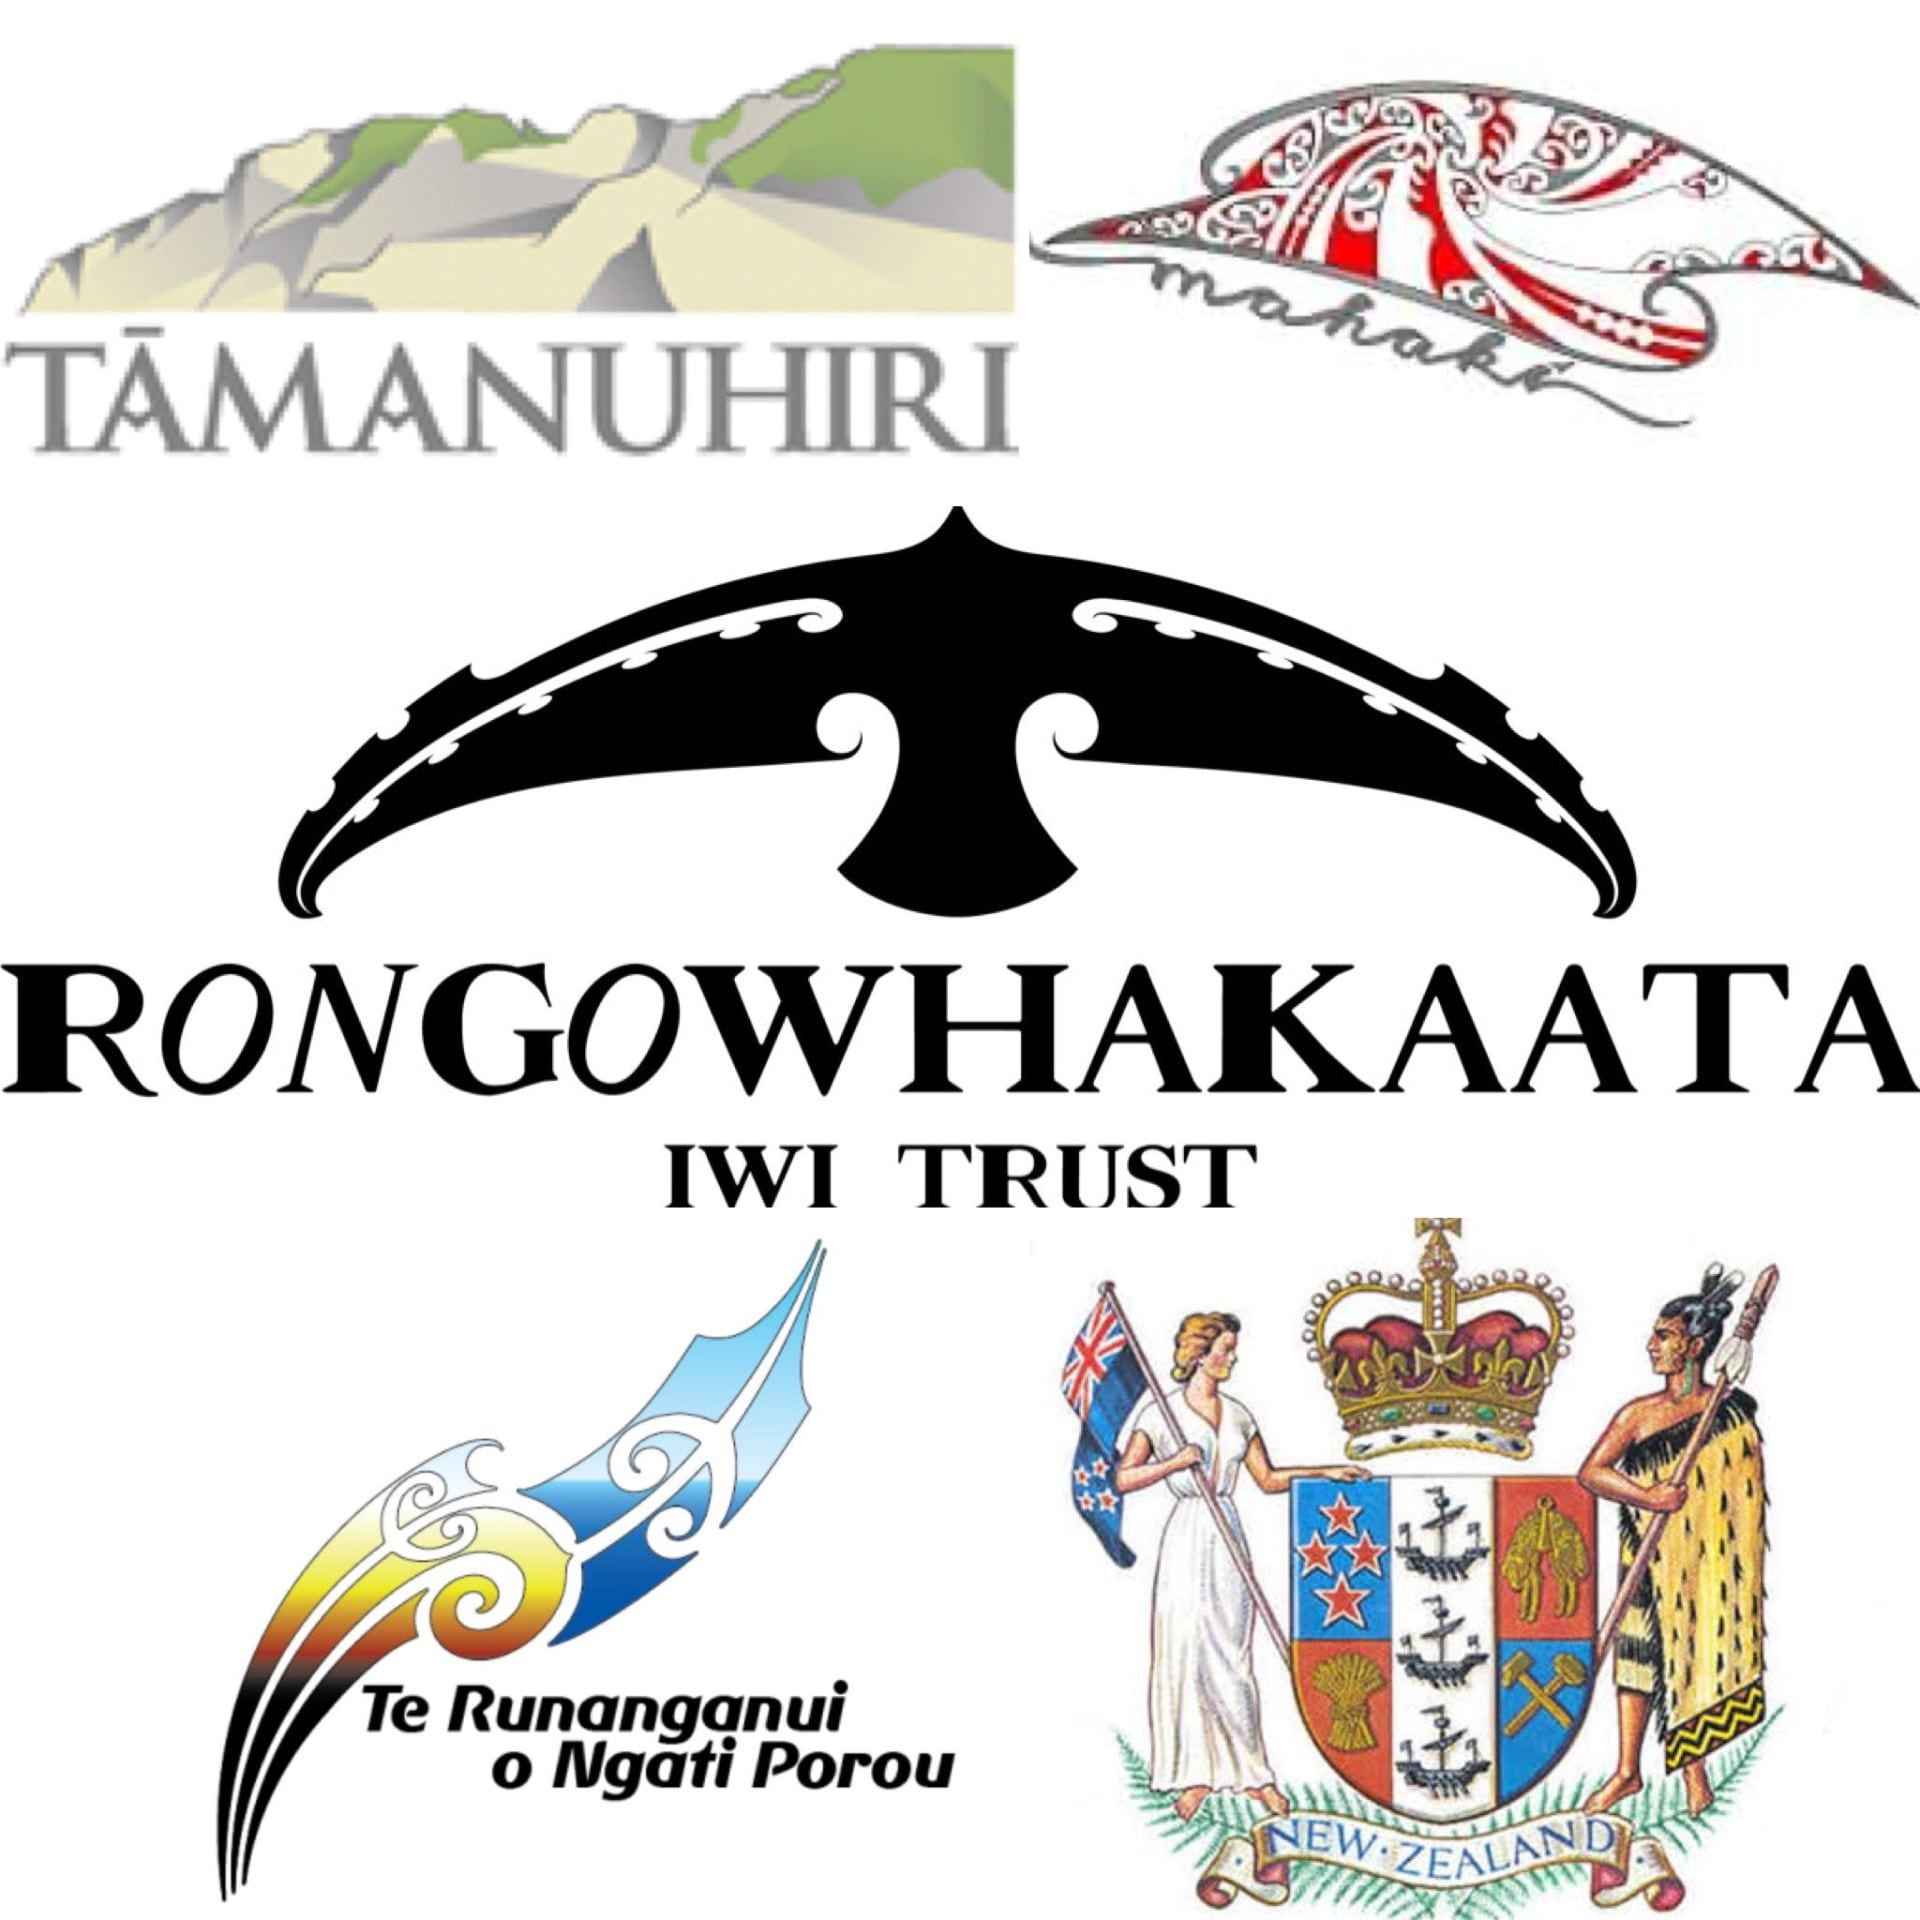 A collage of Tairāwhiti iwi logos: Tāmanuhiri, Mahaki, Rongawhakaata, Te Runanganui o Ngati Porou. Aso the NZ government logo